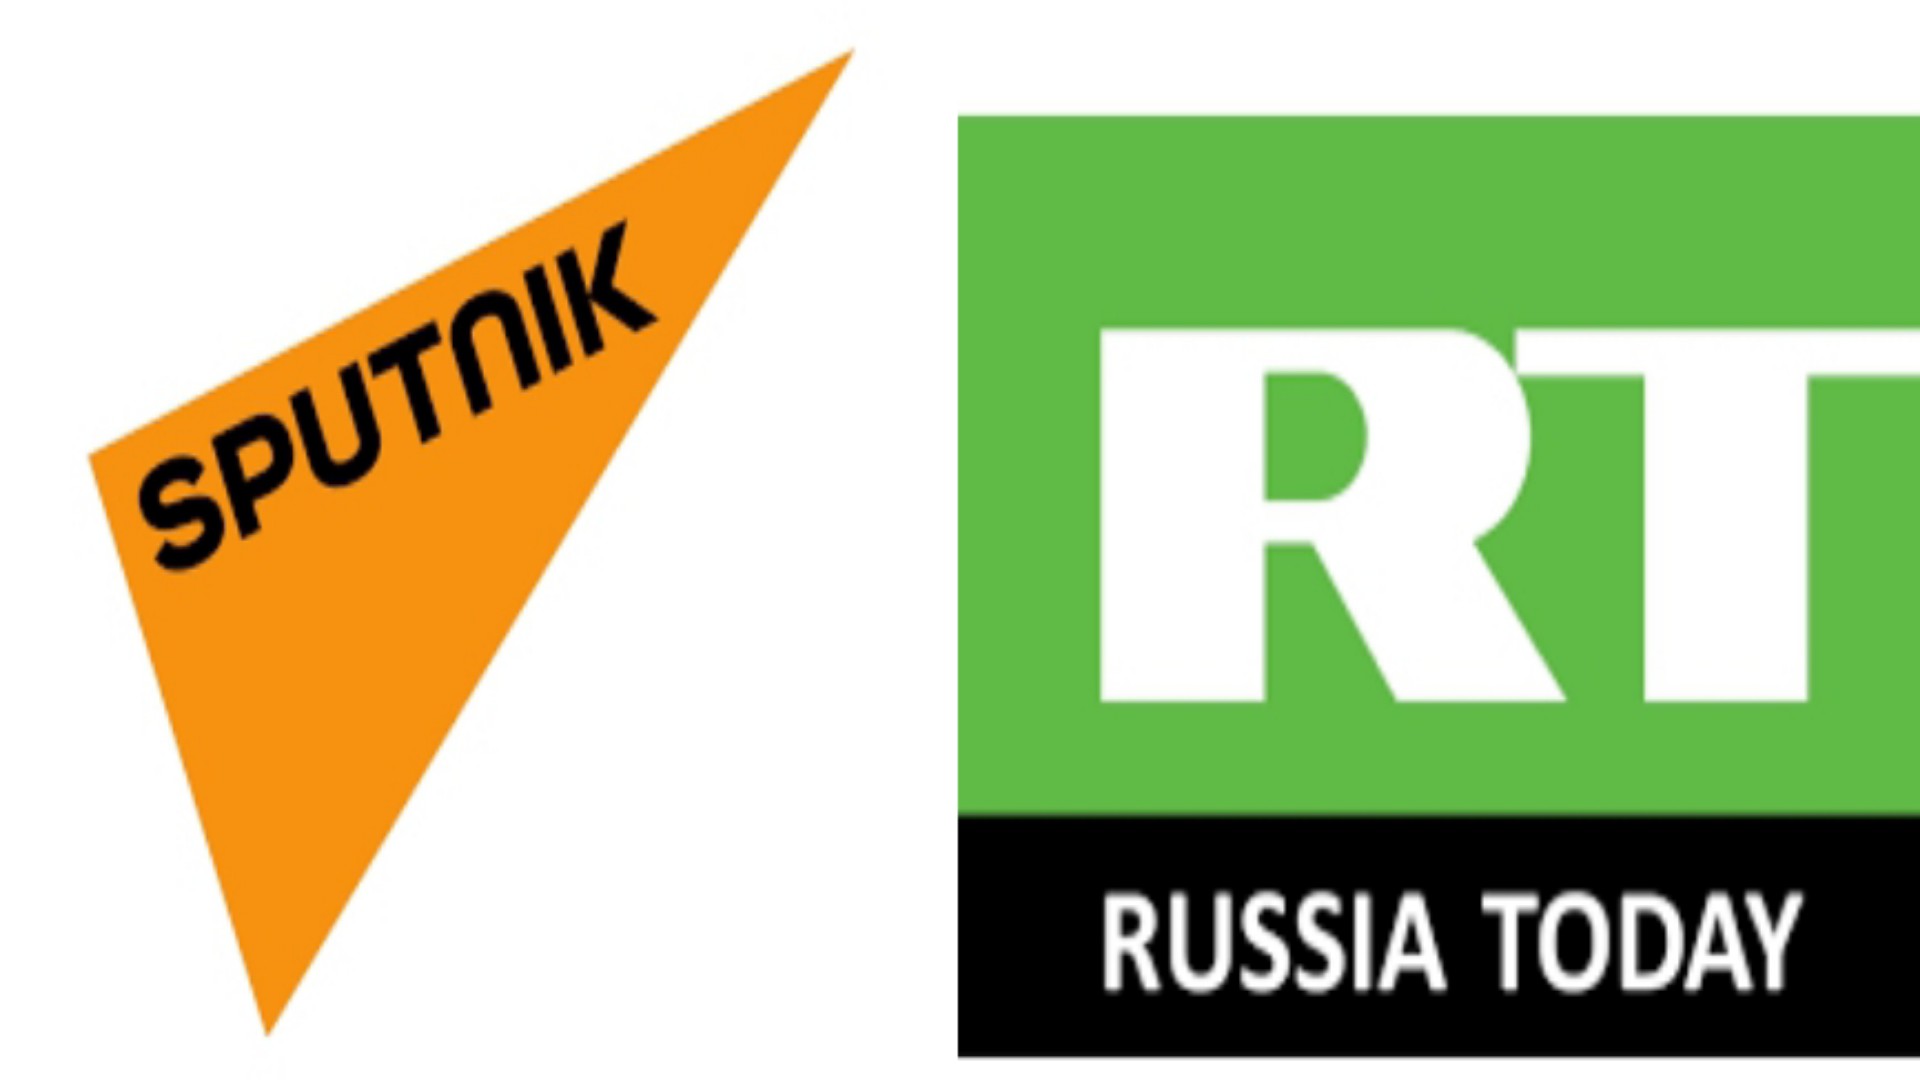 L’UE interdit la diffusion de RT et Sputnik ( chaînes russes ) en Europe